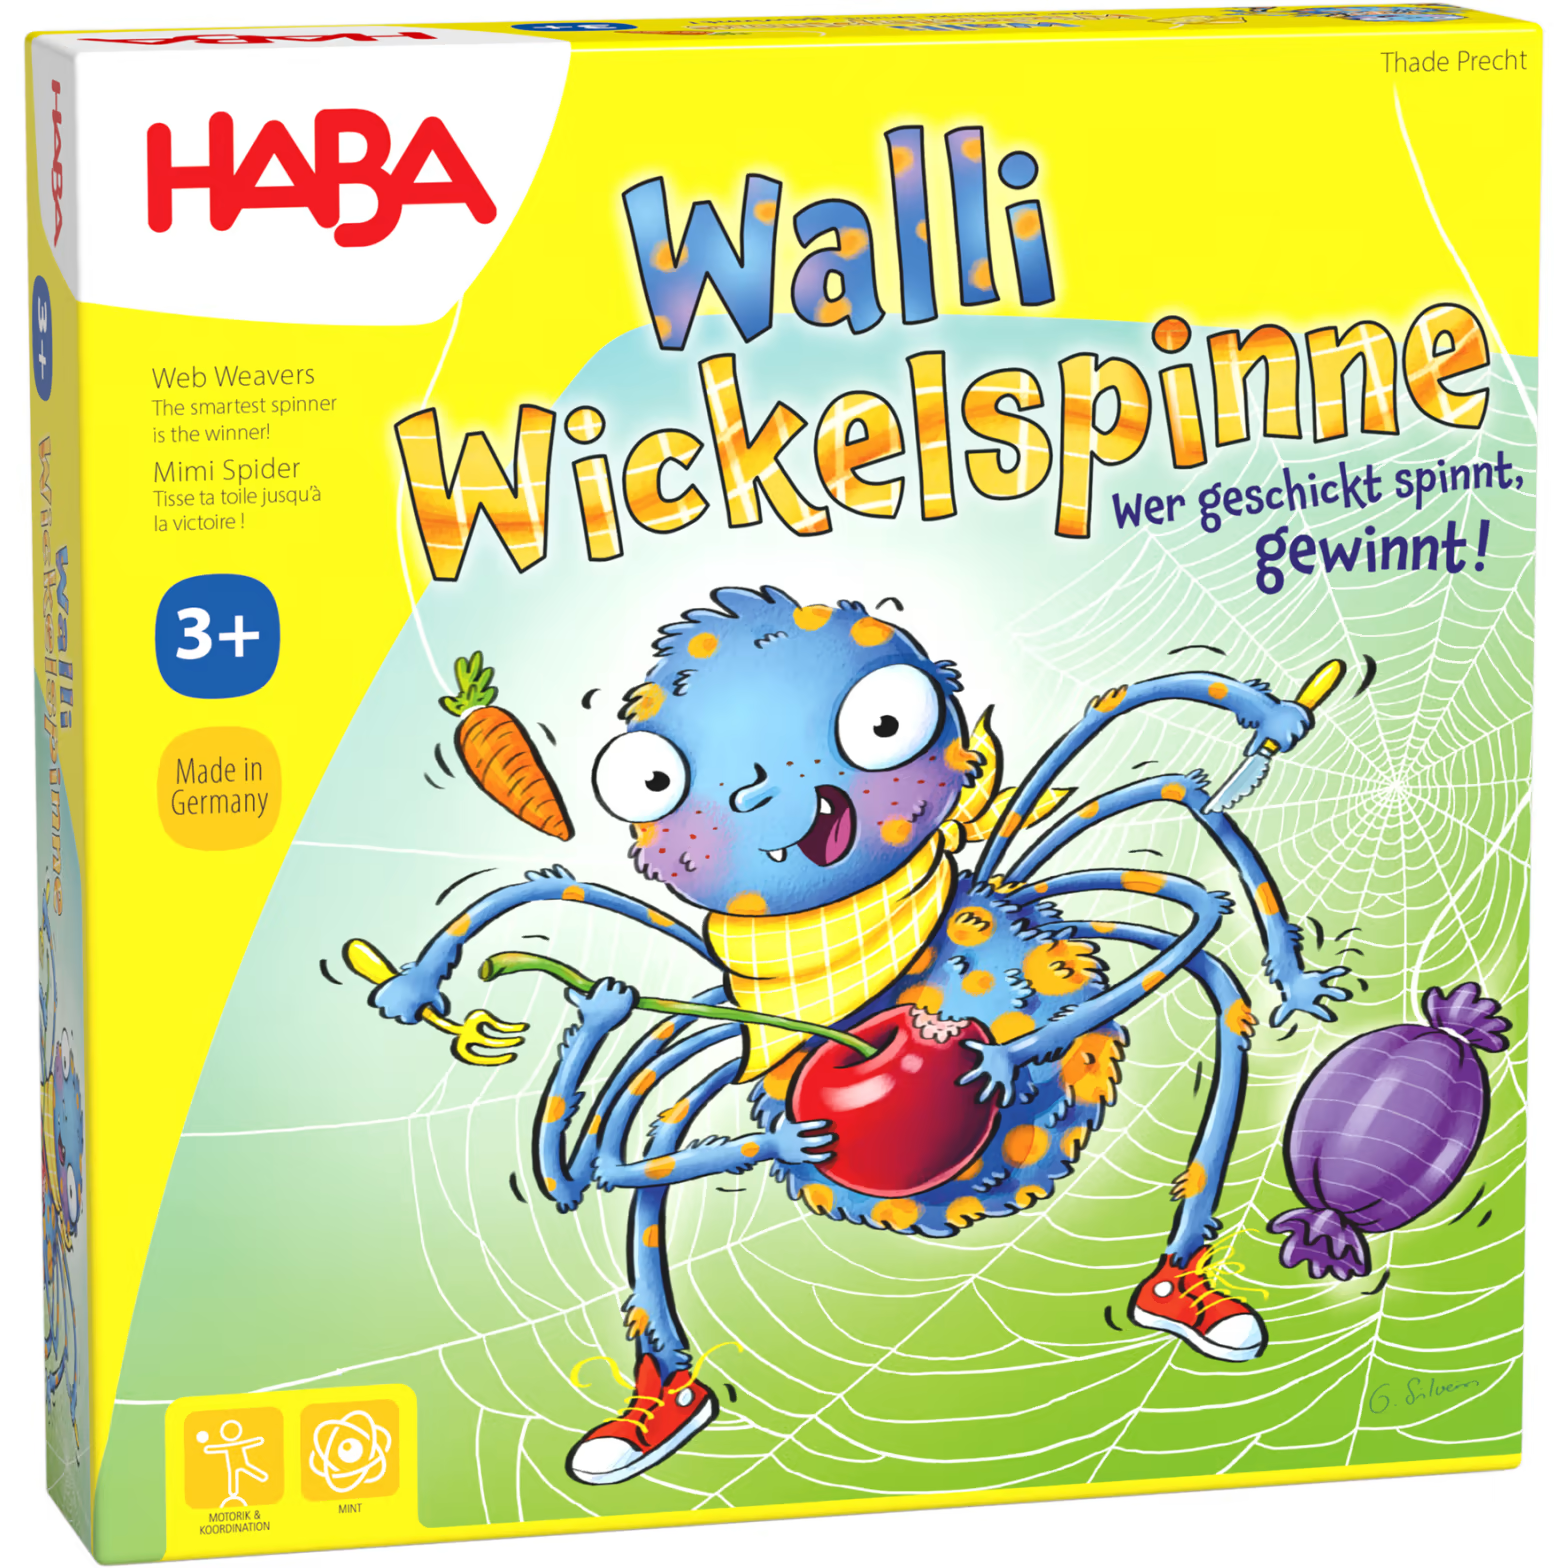 Walli Wackelspinne